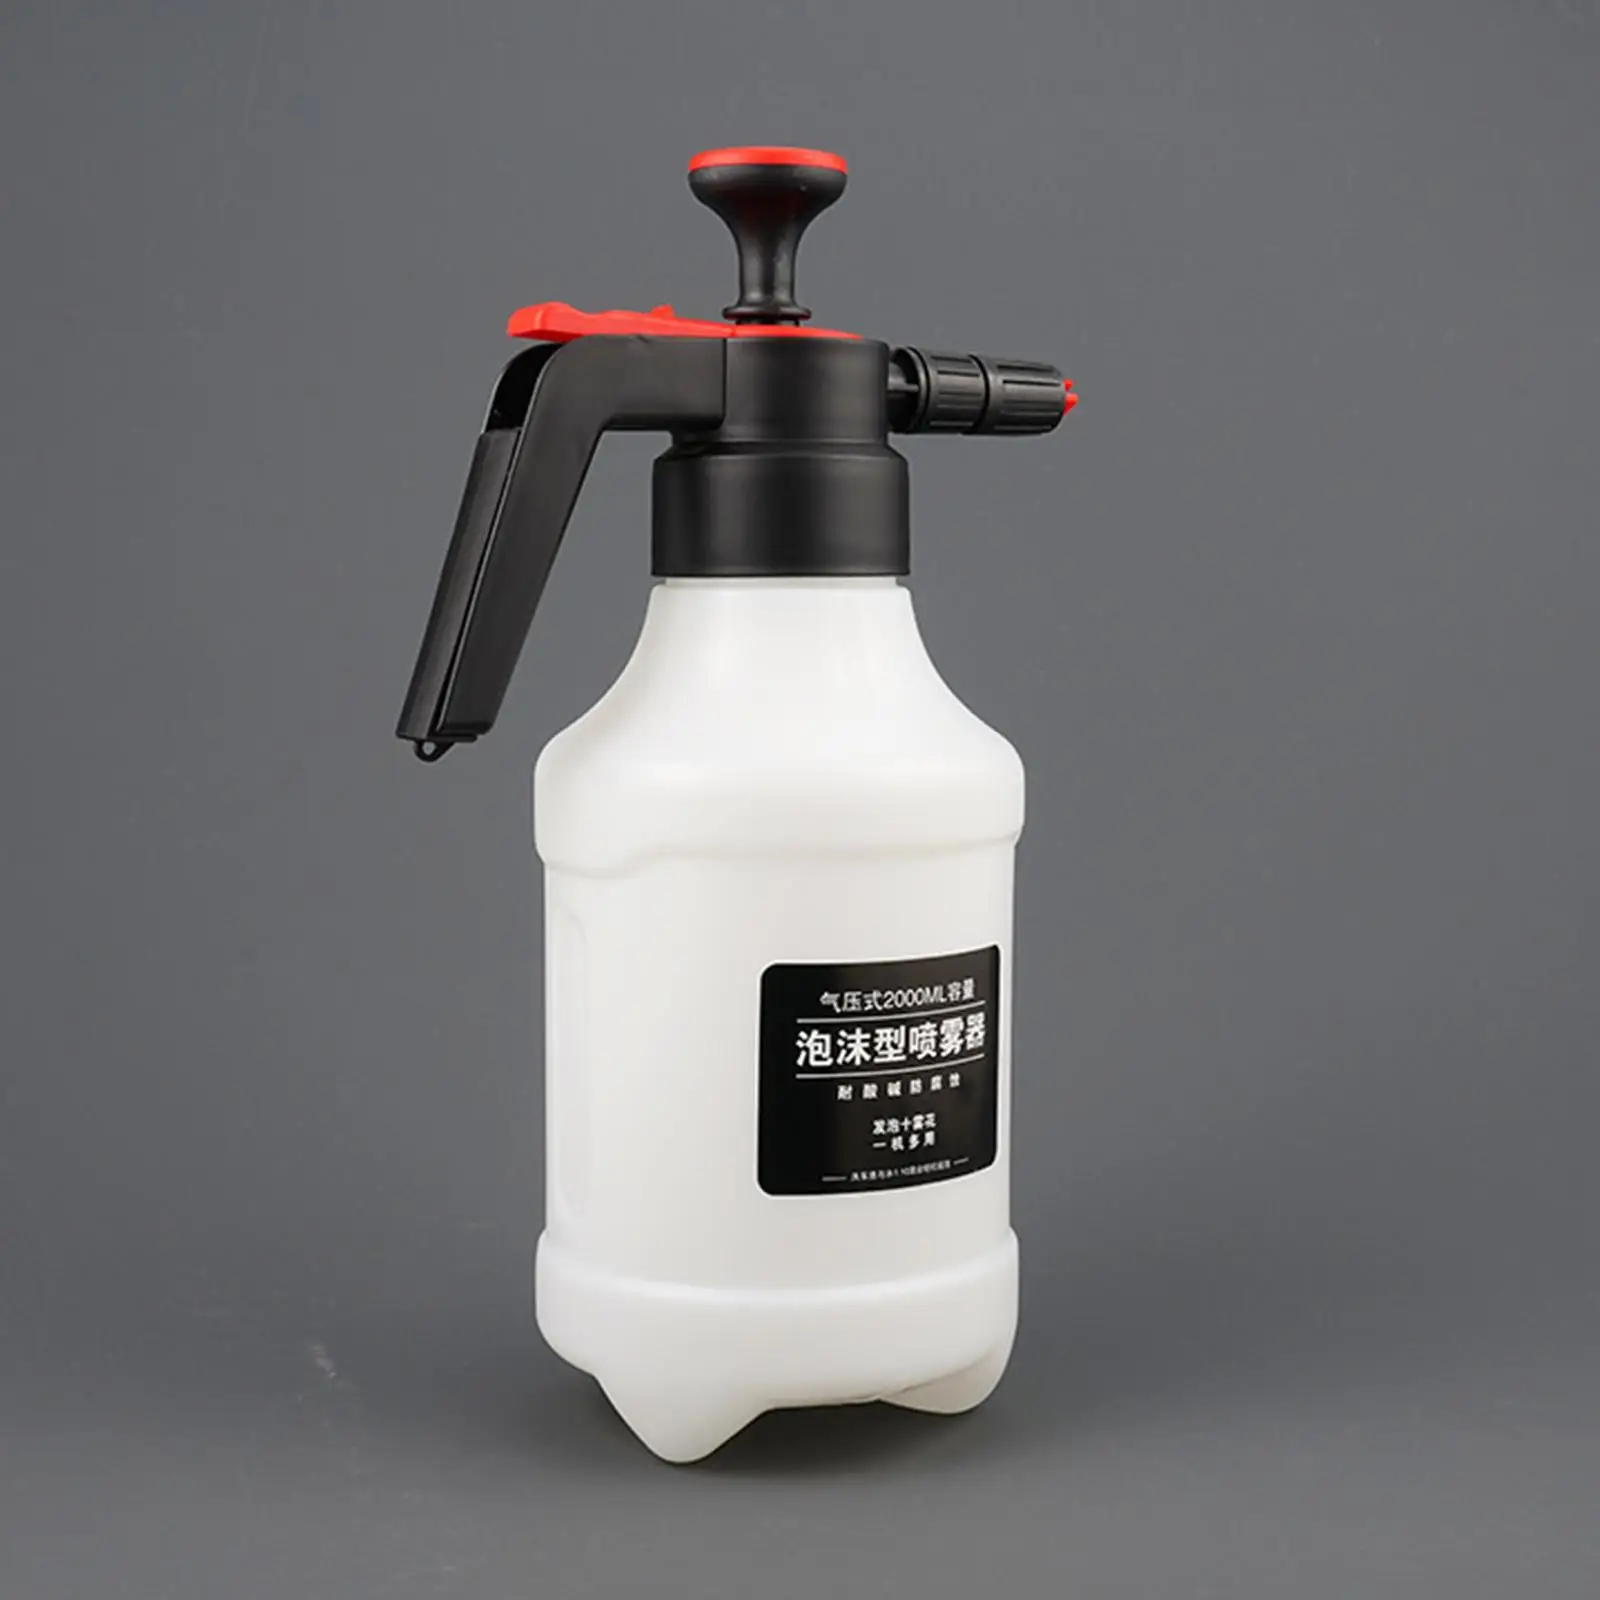 Car Snow Foam Water Sprayer Hand Pressurized Foam Cannon Car Wash 2.0L Soap Sprayer for Car Window Washing Automotive Detailing